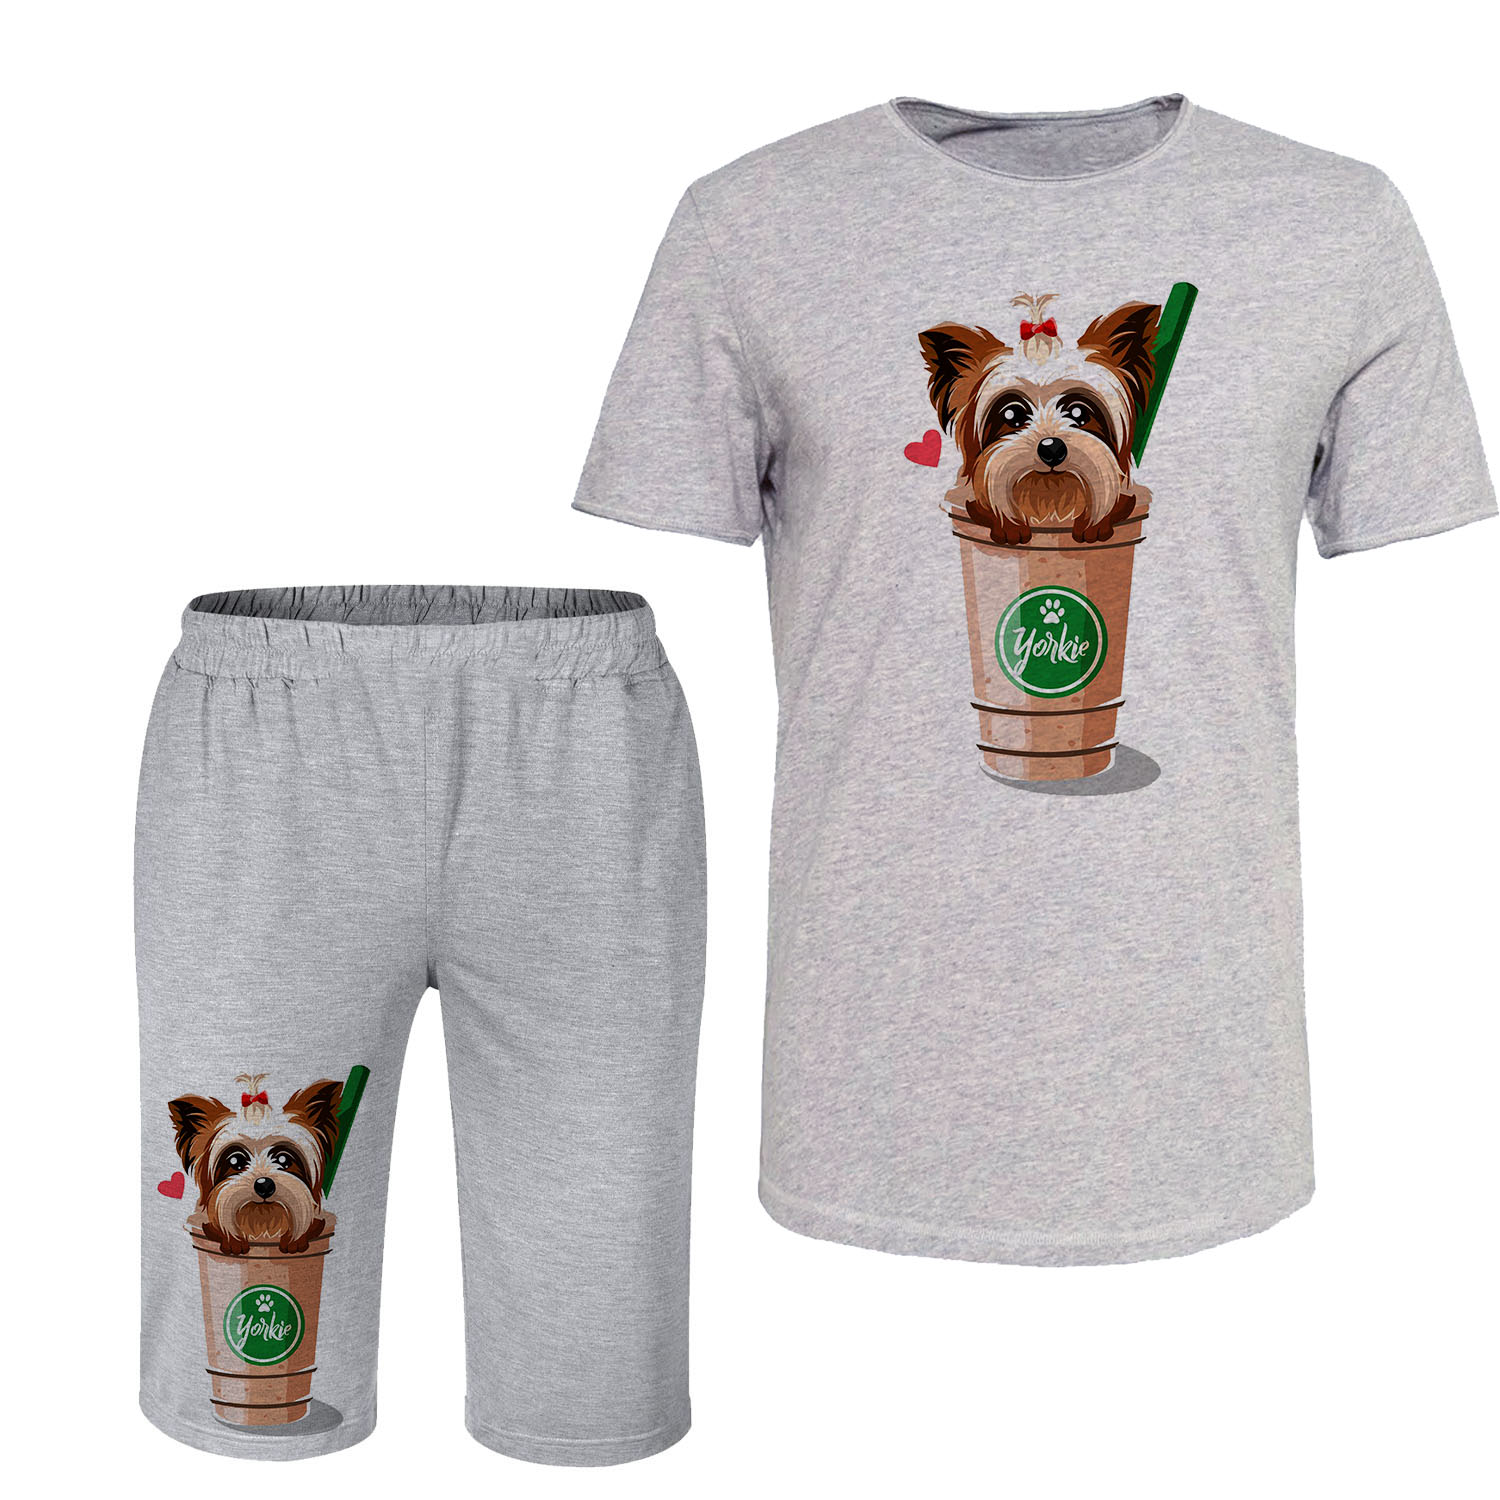 ست تی شرت و شلوارک مردانه مدل سگ کد 138 رنگ طوسی